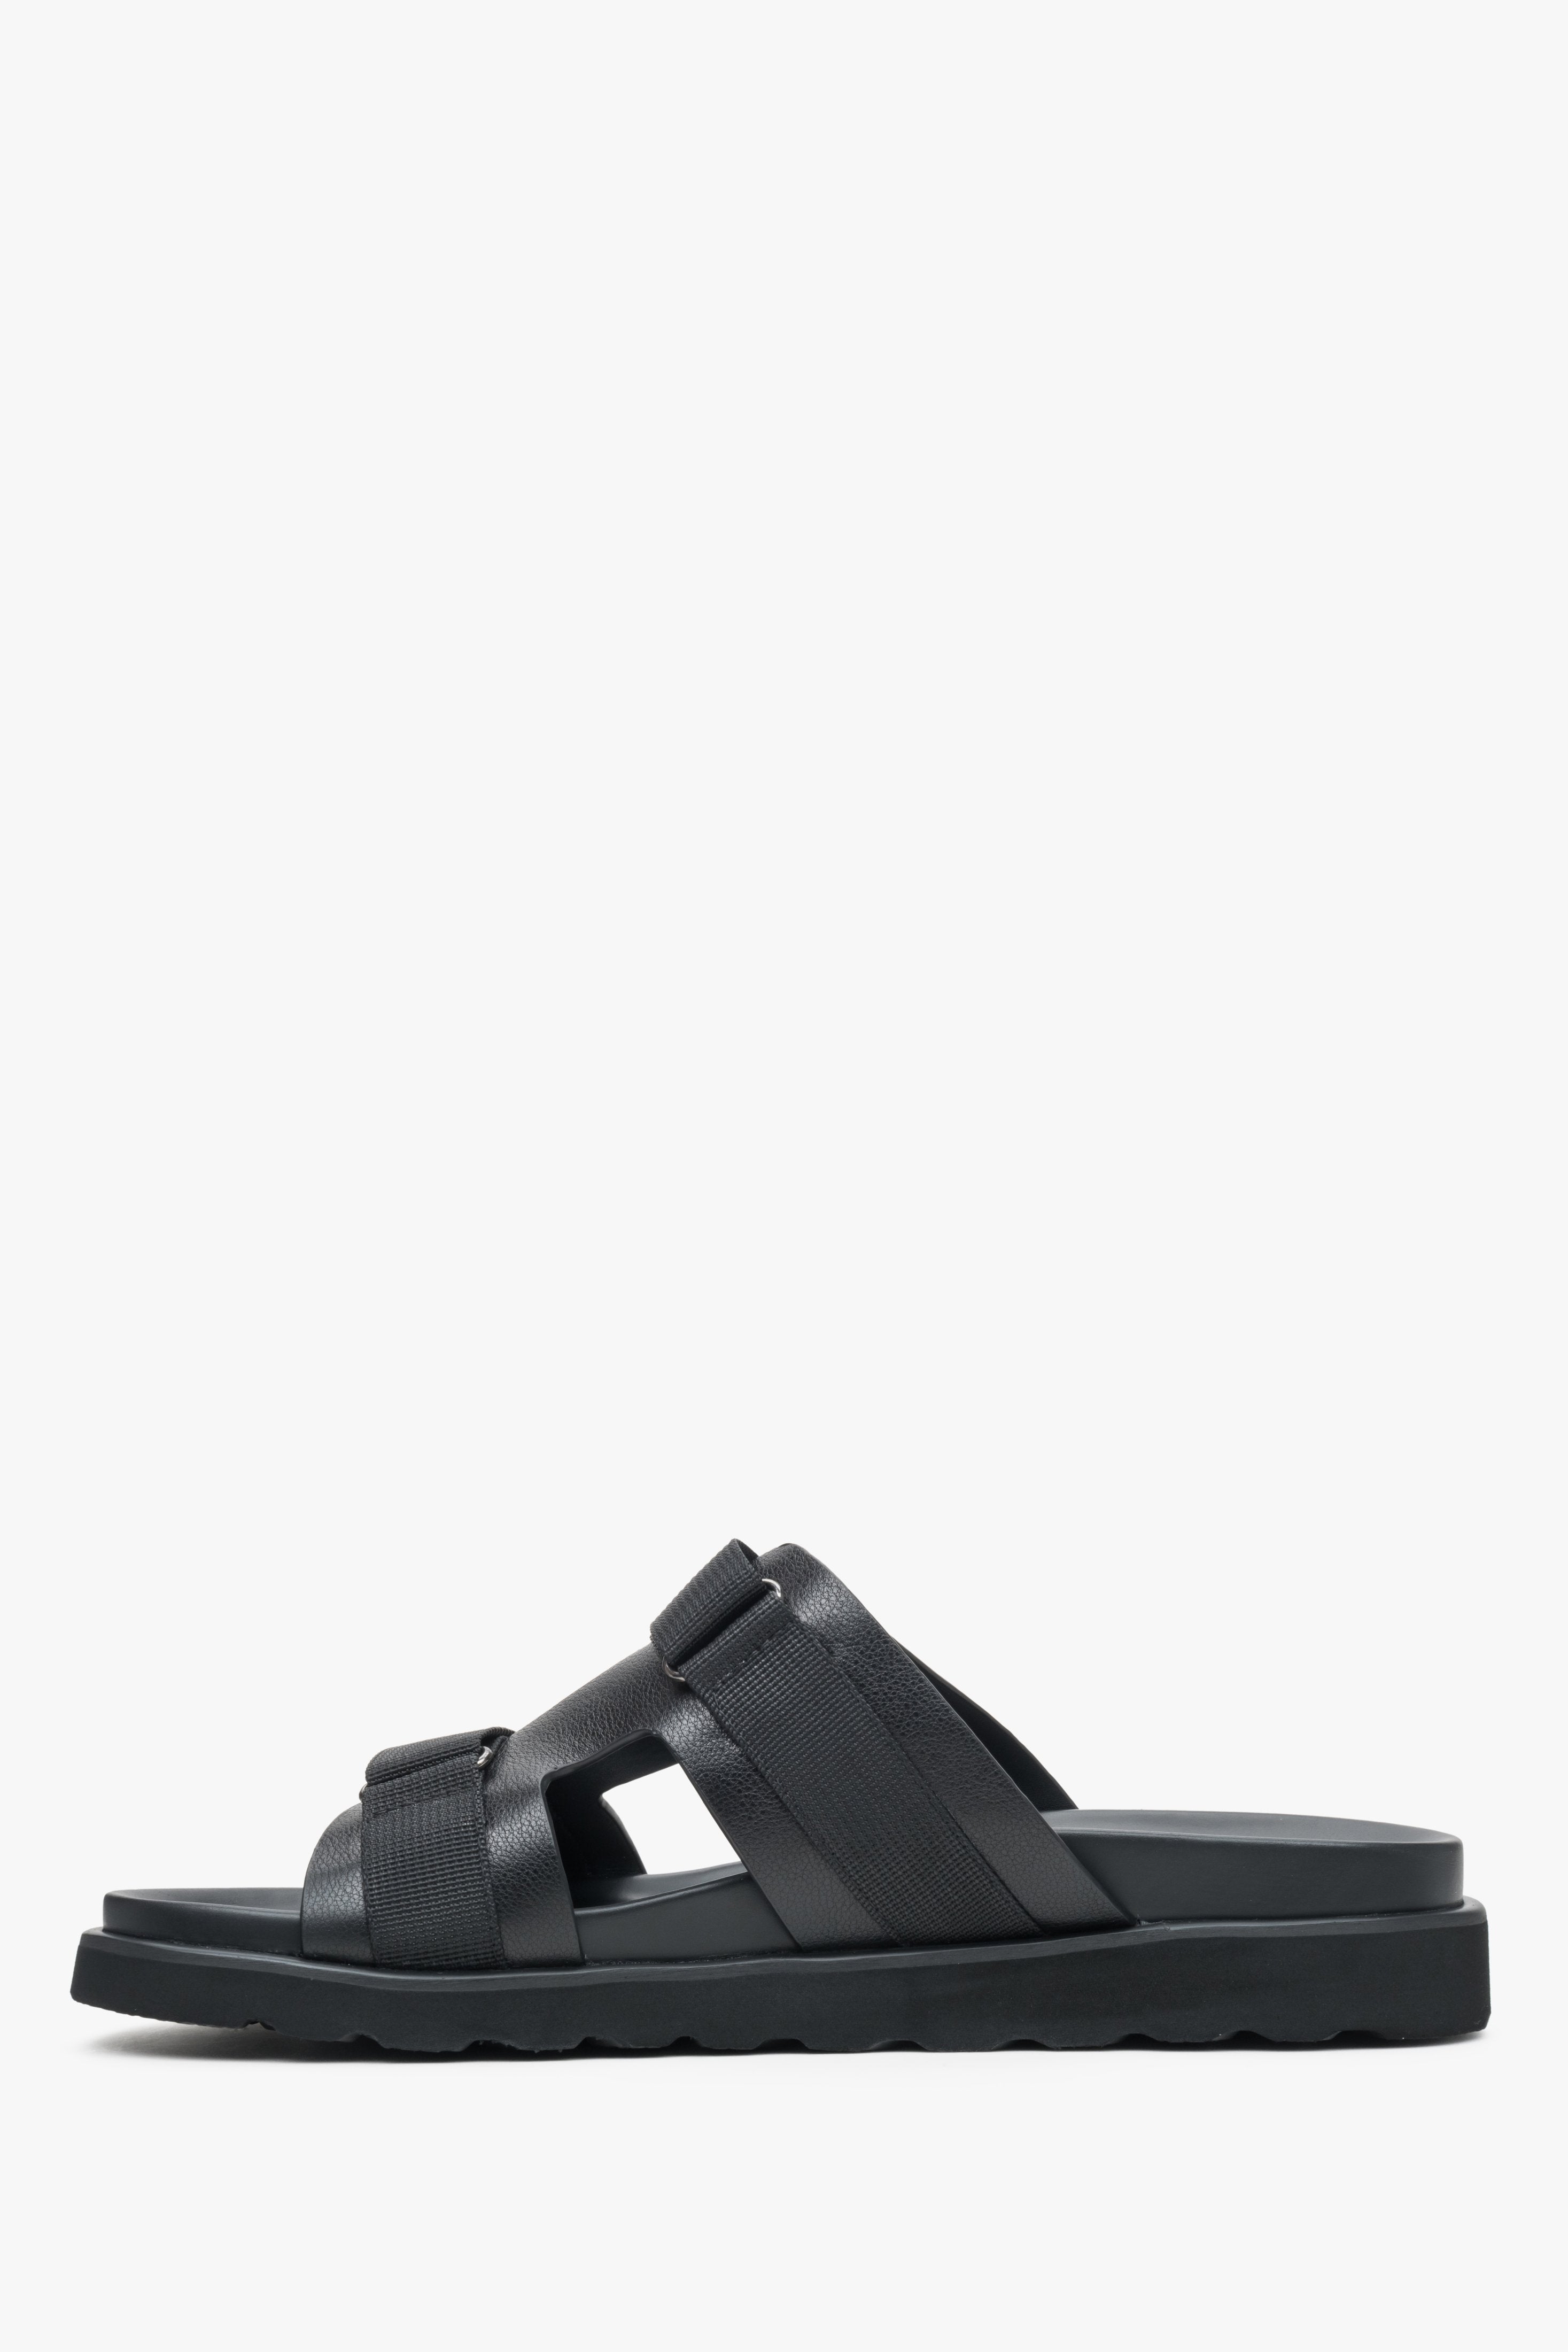 Leather, men's black flip-flops with a flexible sole by Estro - shoe profile.